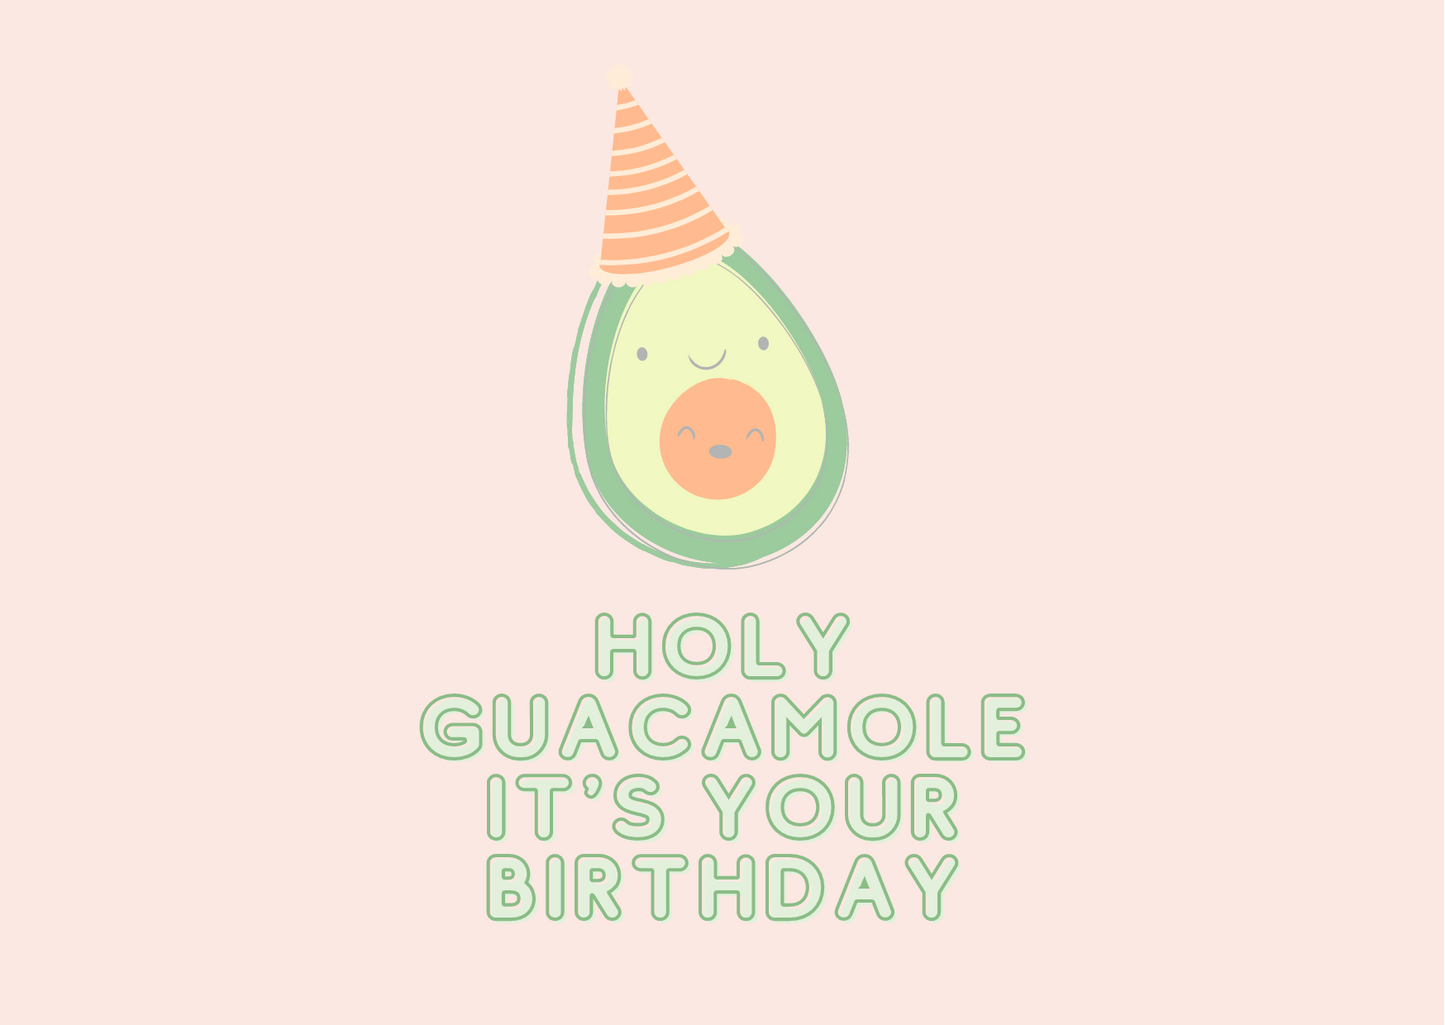 It's your birthday!